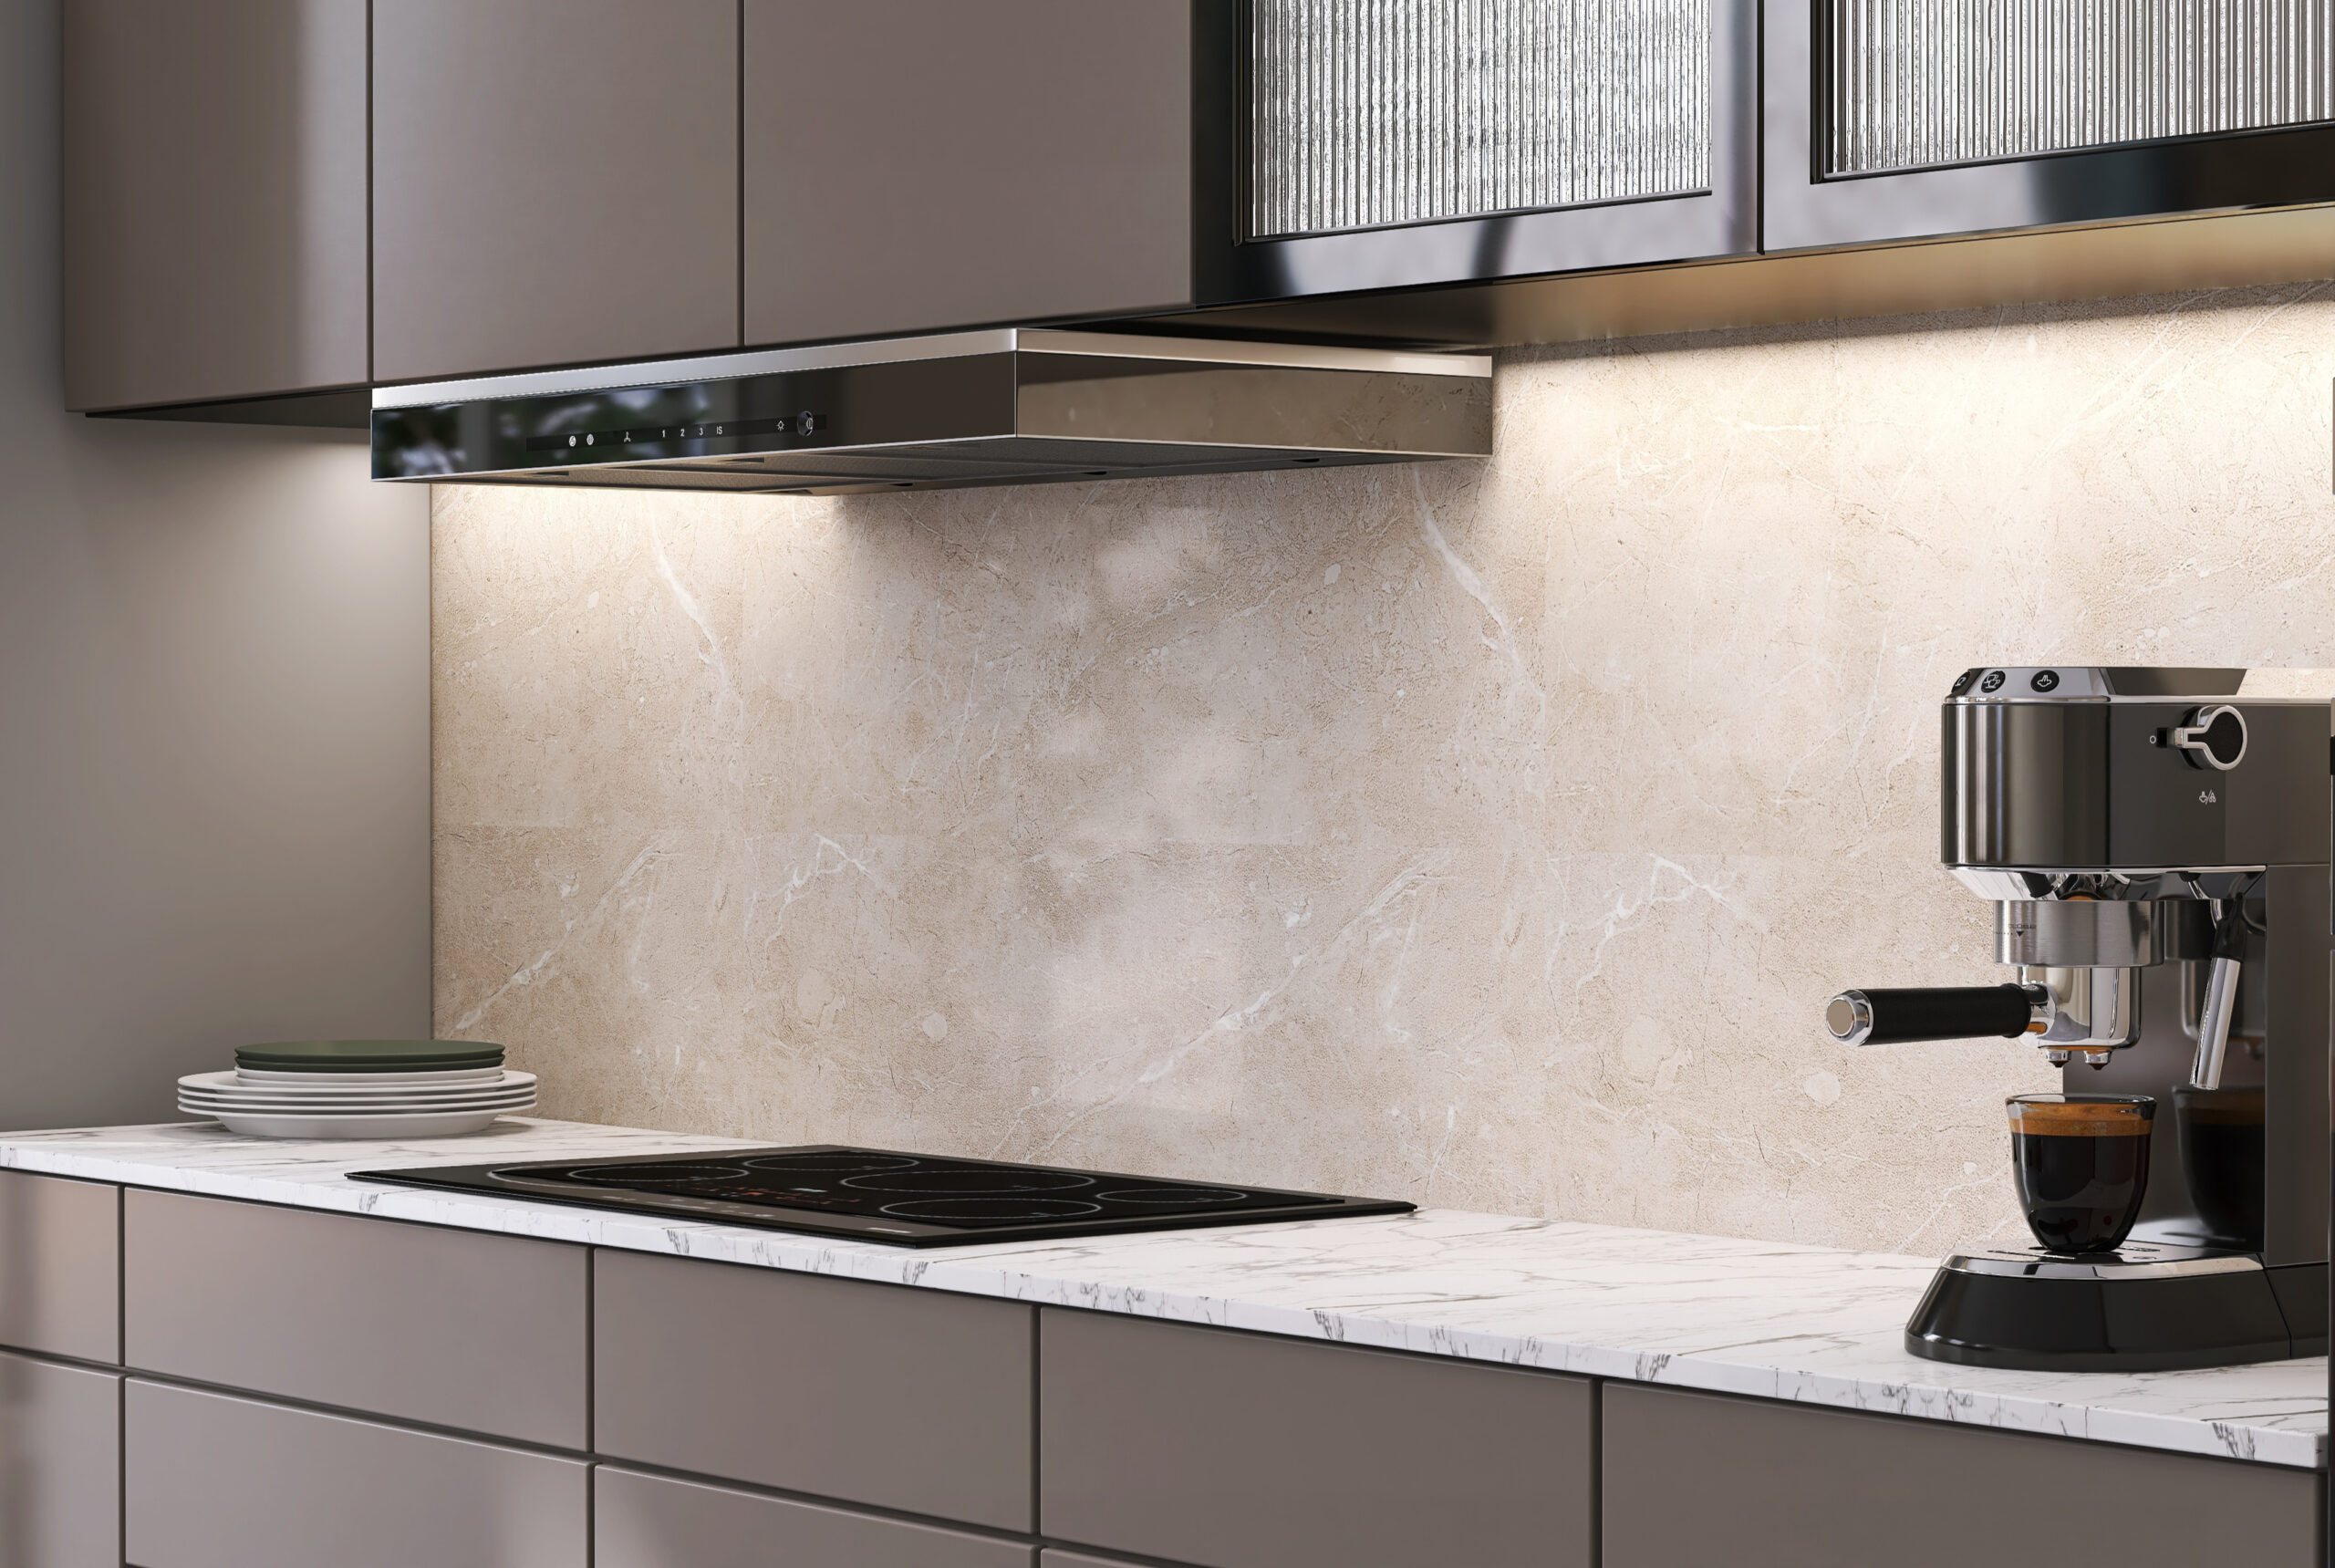 Upgrade kitchen aesthetics with a fitting backsplash, harmonized paint, and stylish details.